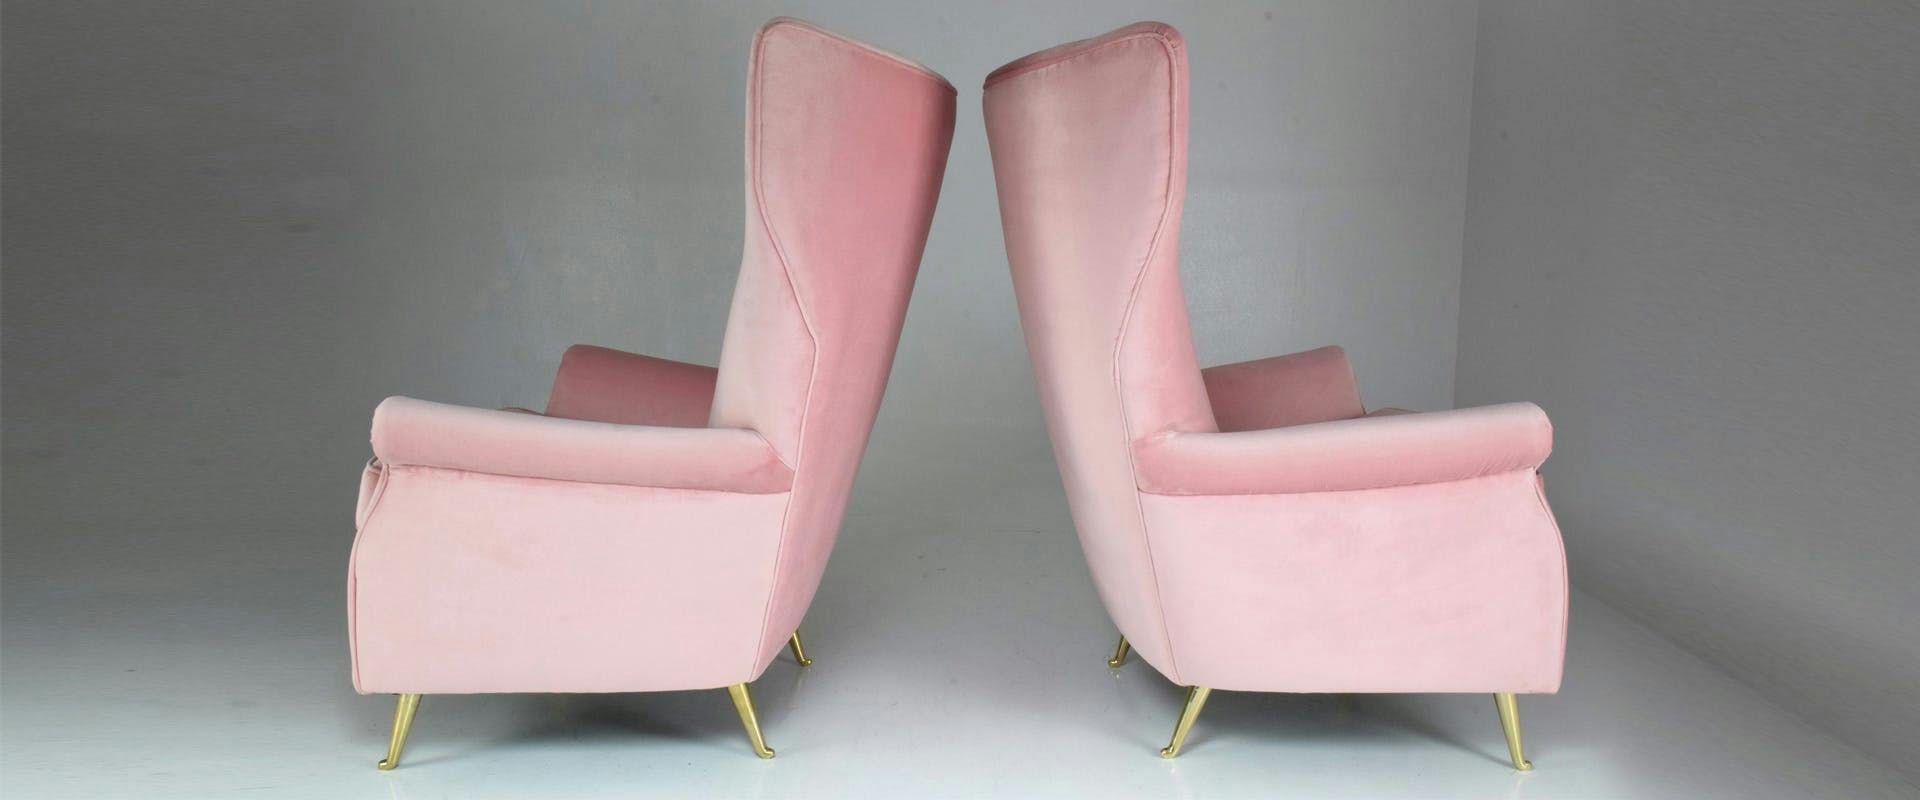 furniture chair armchair